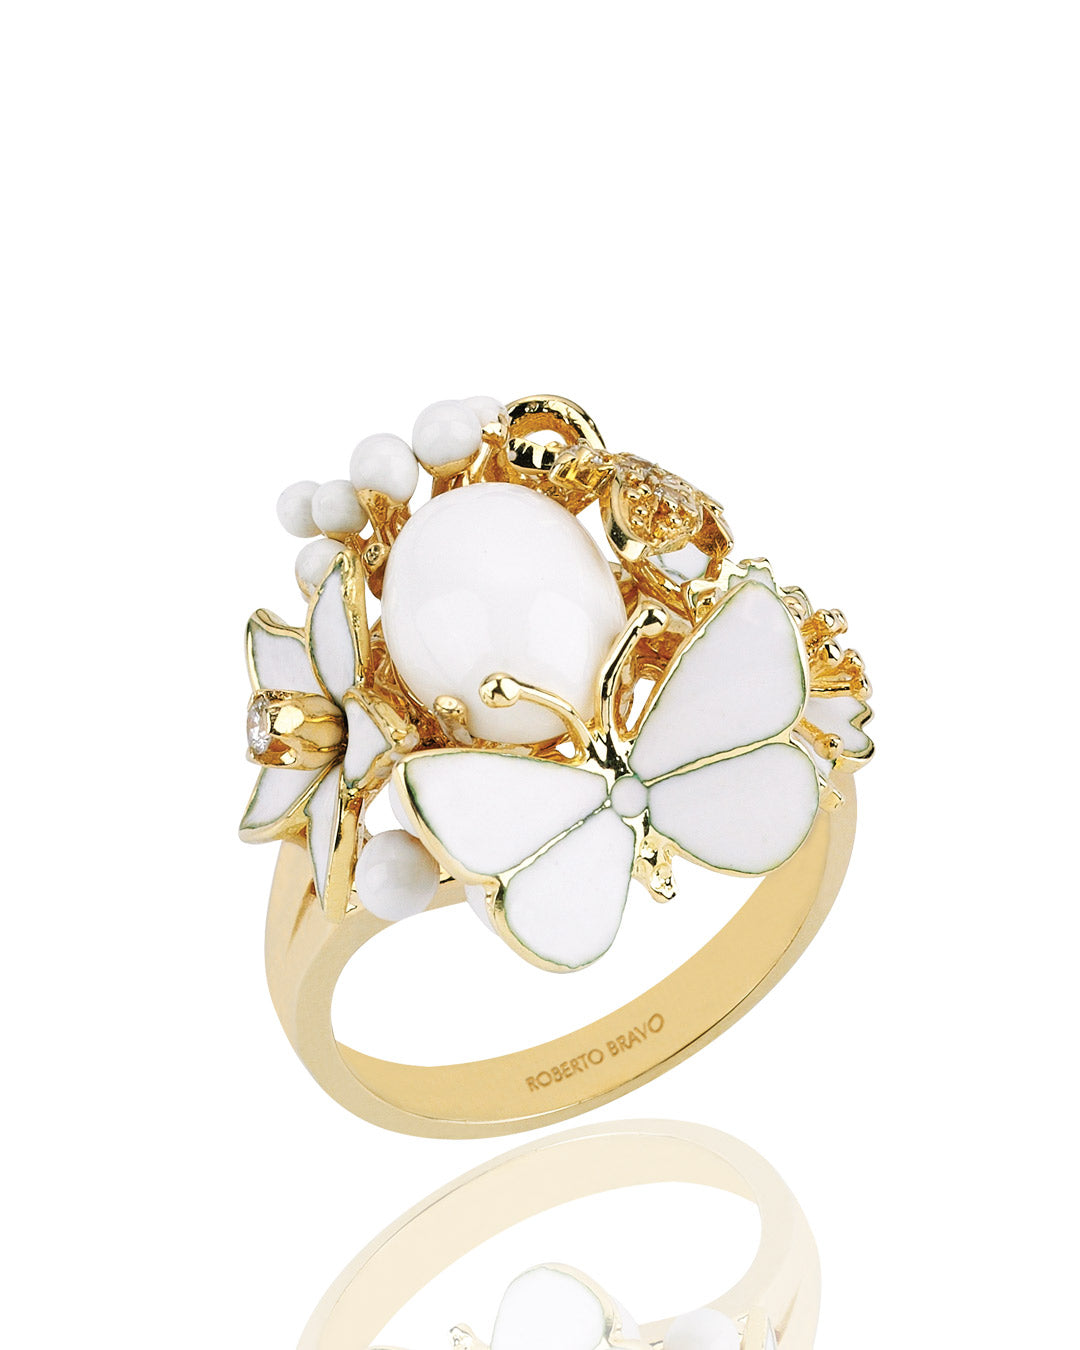 Special Design White Enameled Ring